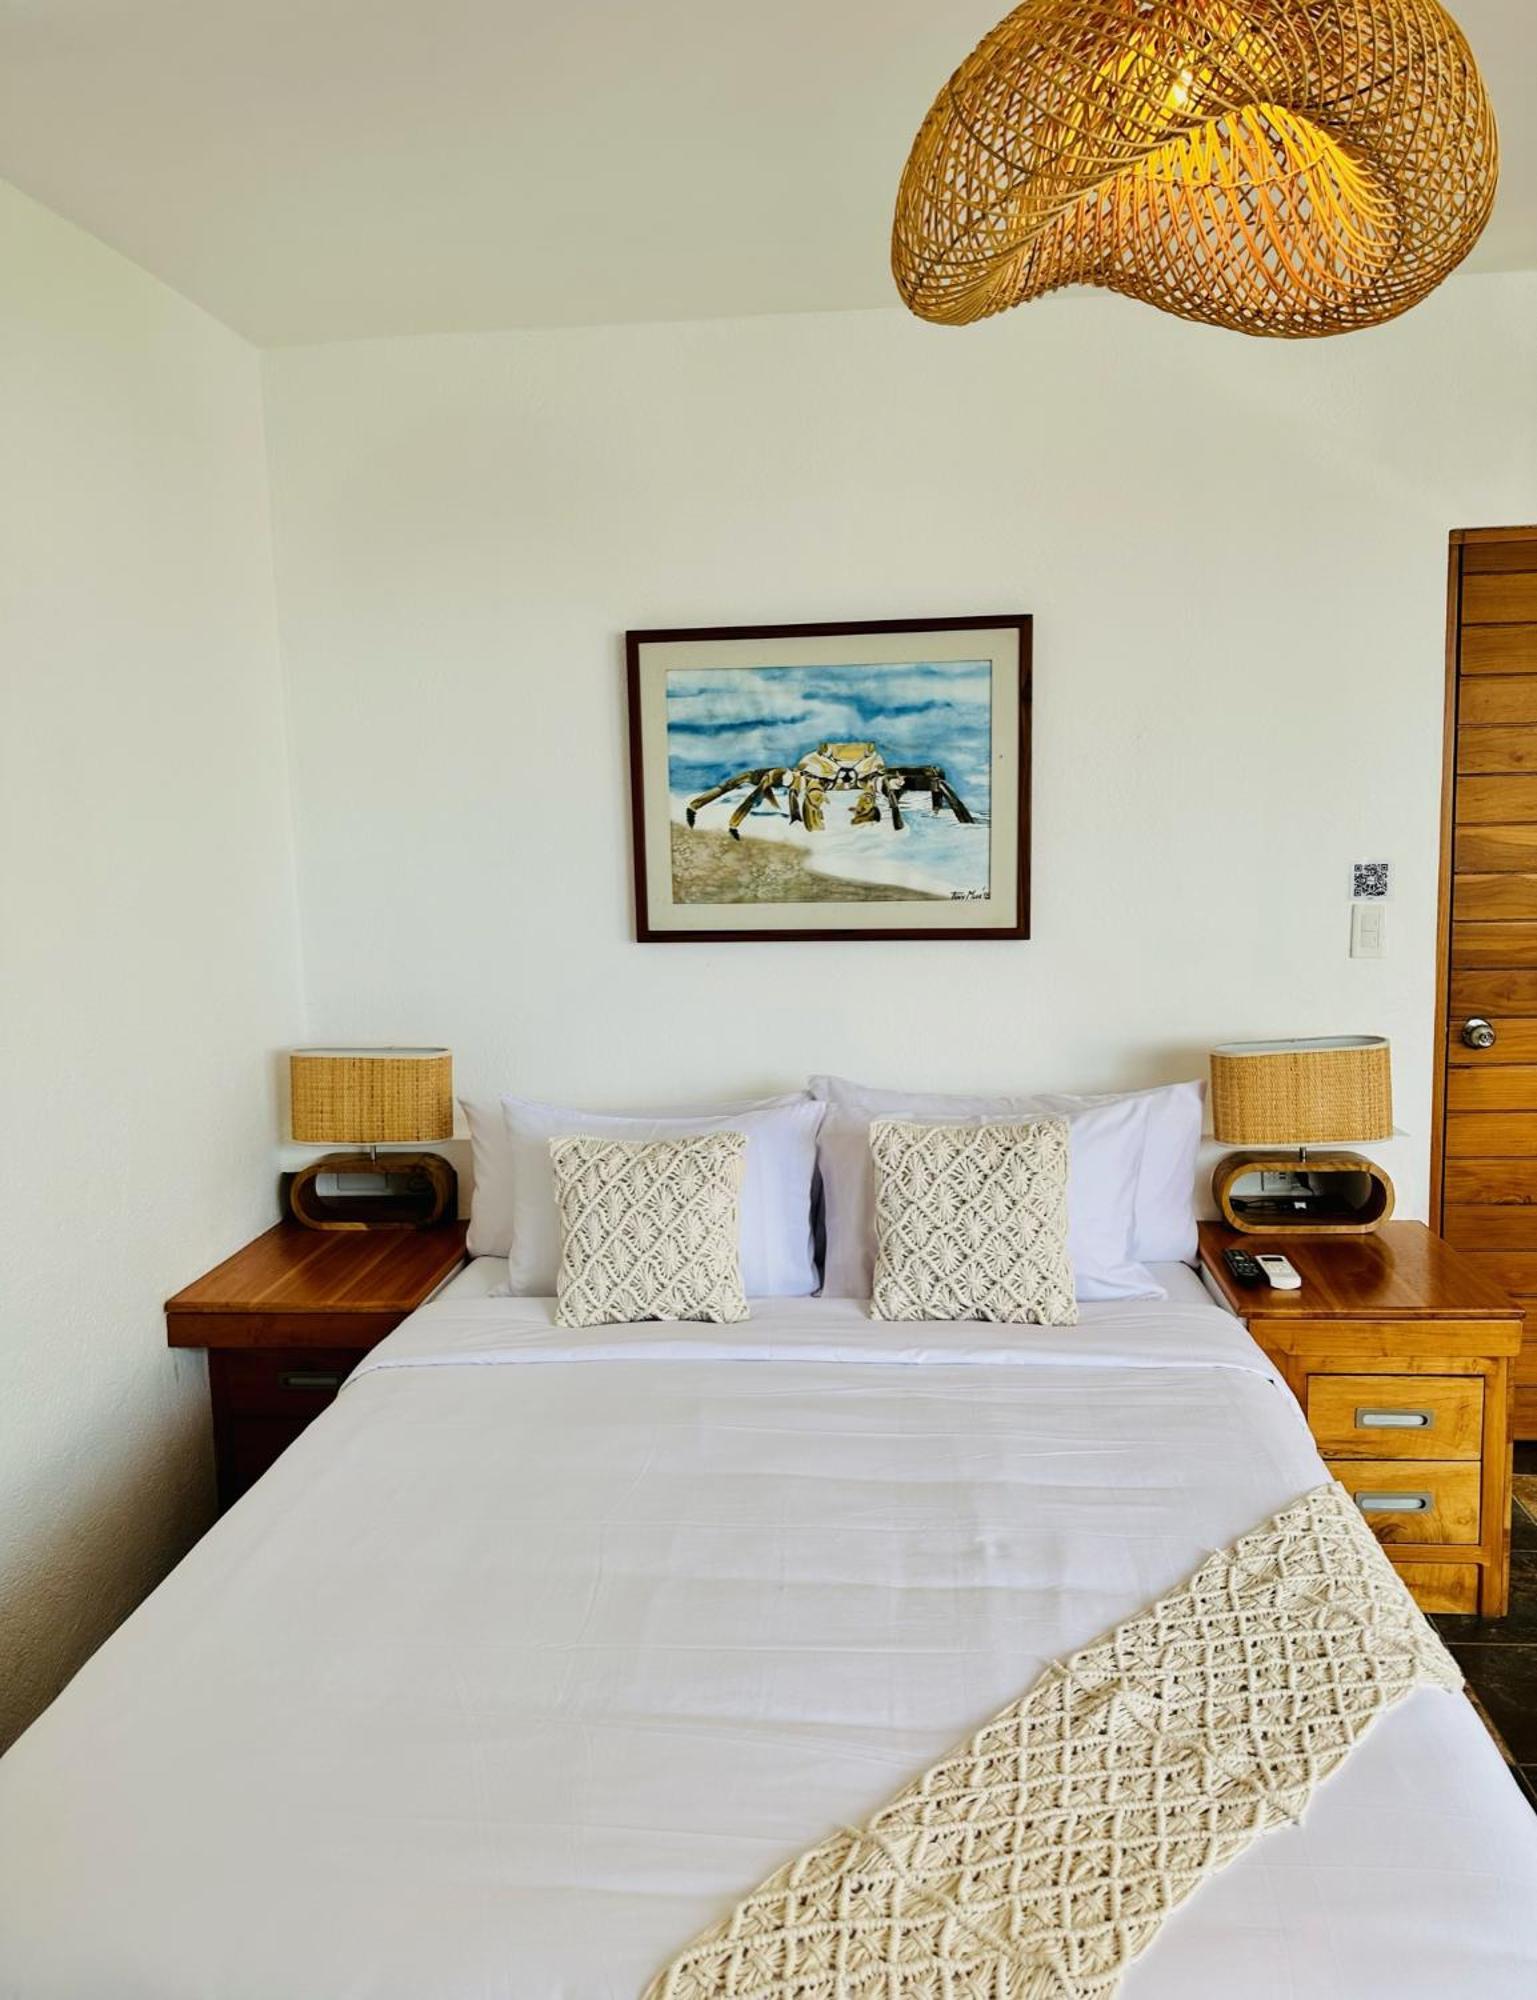 Hotel Villa Escalesia Galapagos Puerto Ayora  Exteriér fotografie